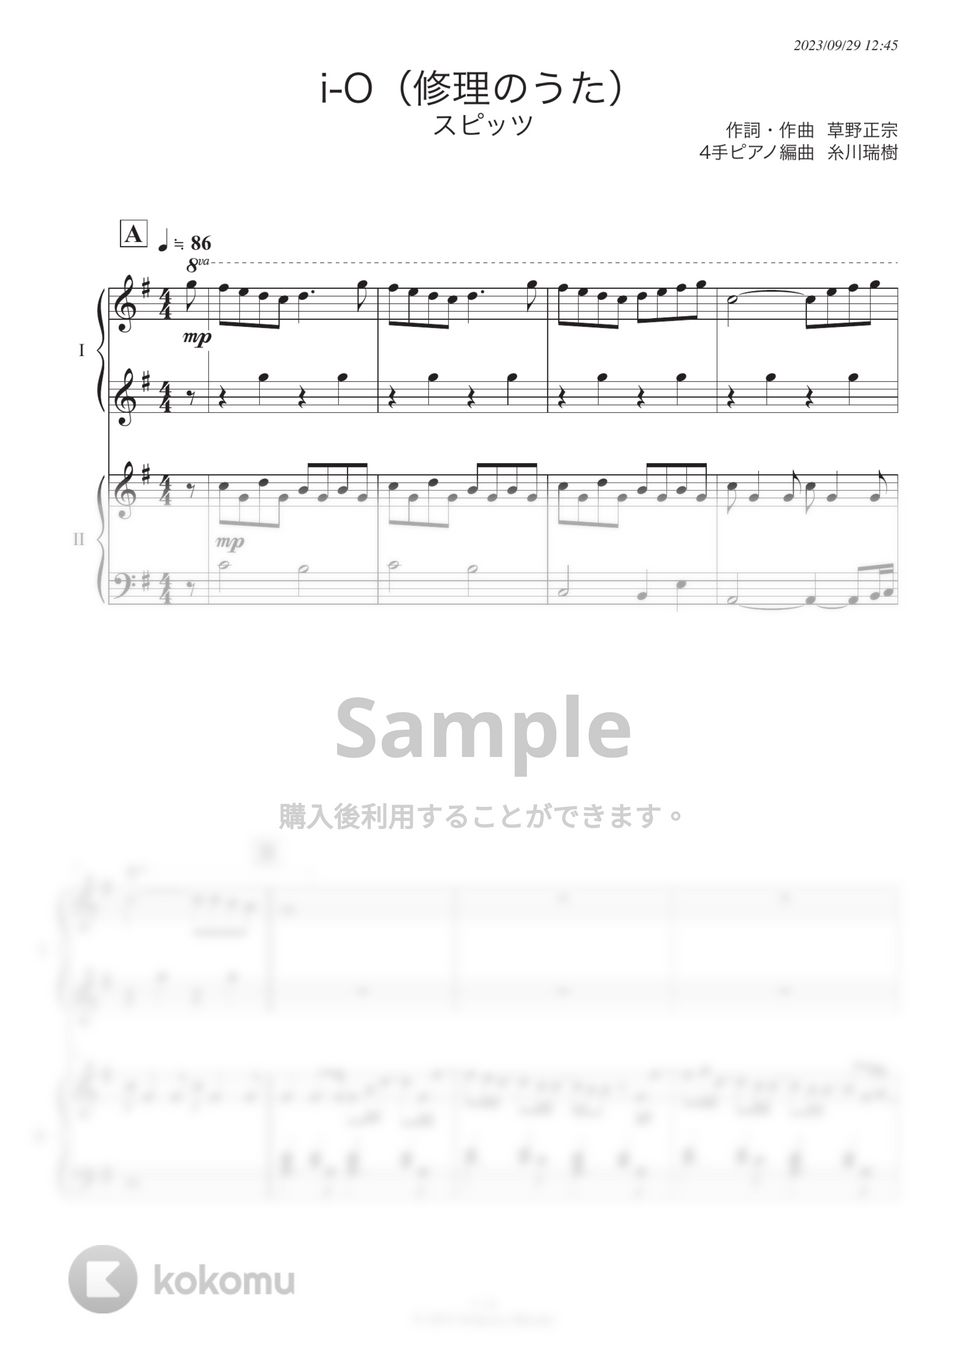 スピッツ - i-O(修理のうた) (ピアノ連弾) by 糸川瑞樹